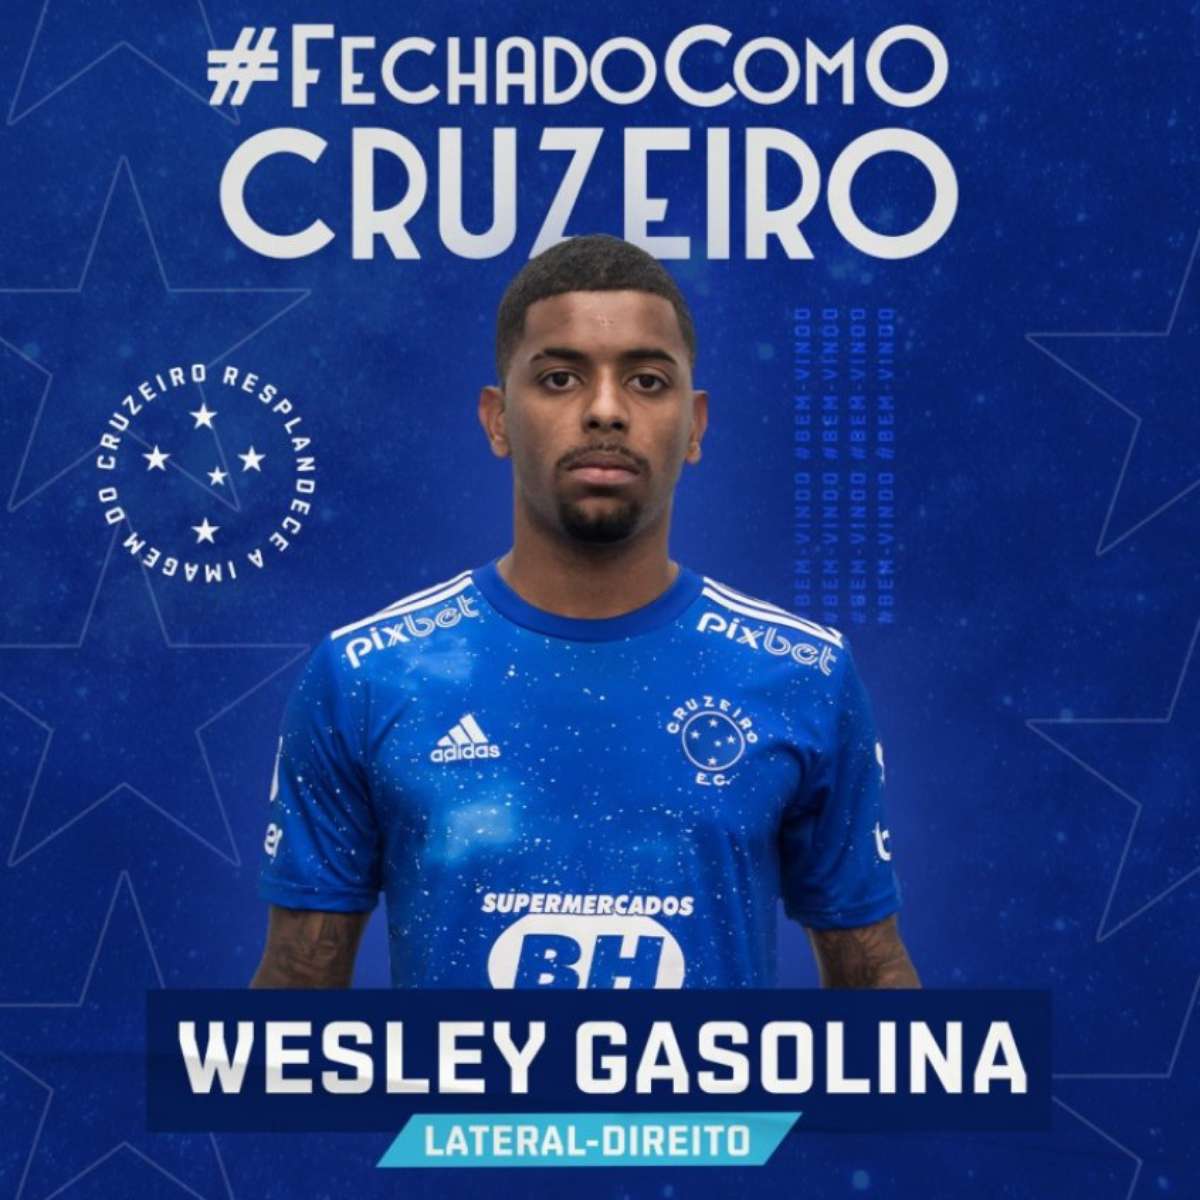 Wesley Gasolina, do Cruzeiro, inicia importante passo para